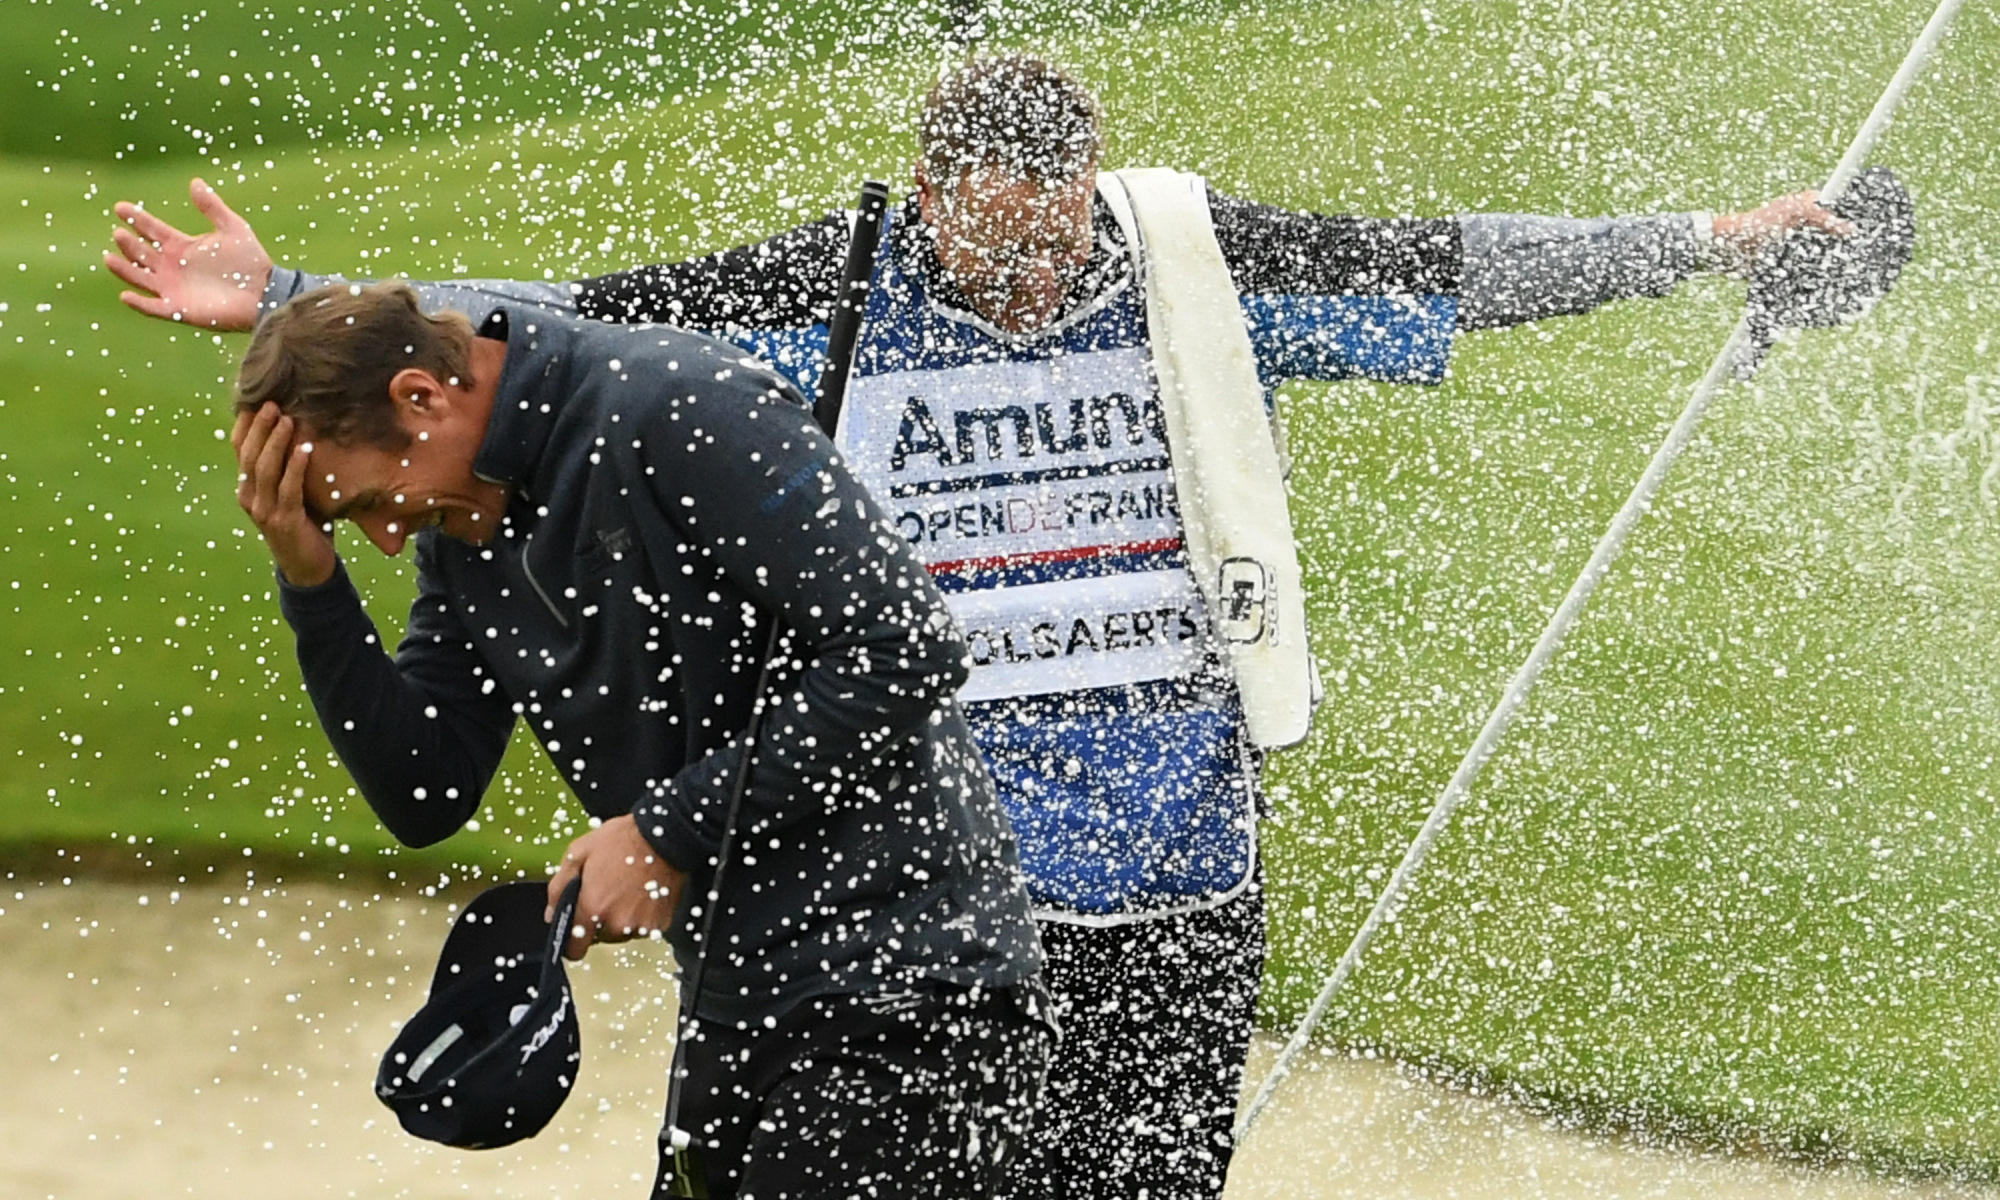 Nicholas Colsaerts giải cơn khát chiến thắng tại Amundi Open de France